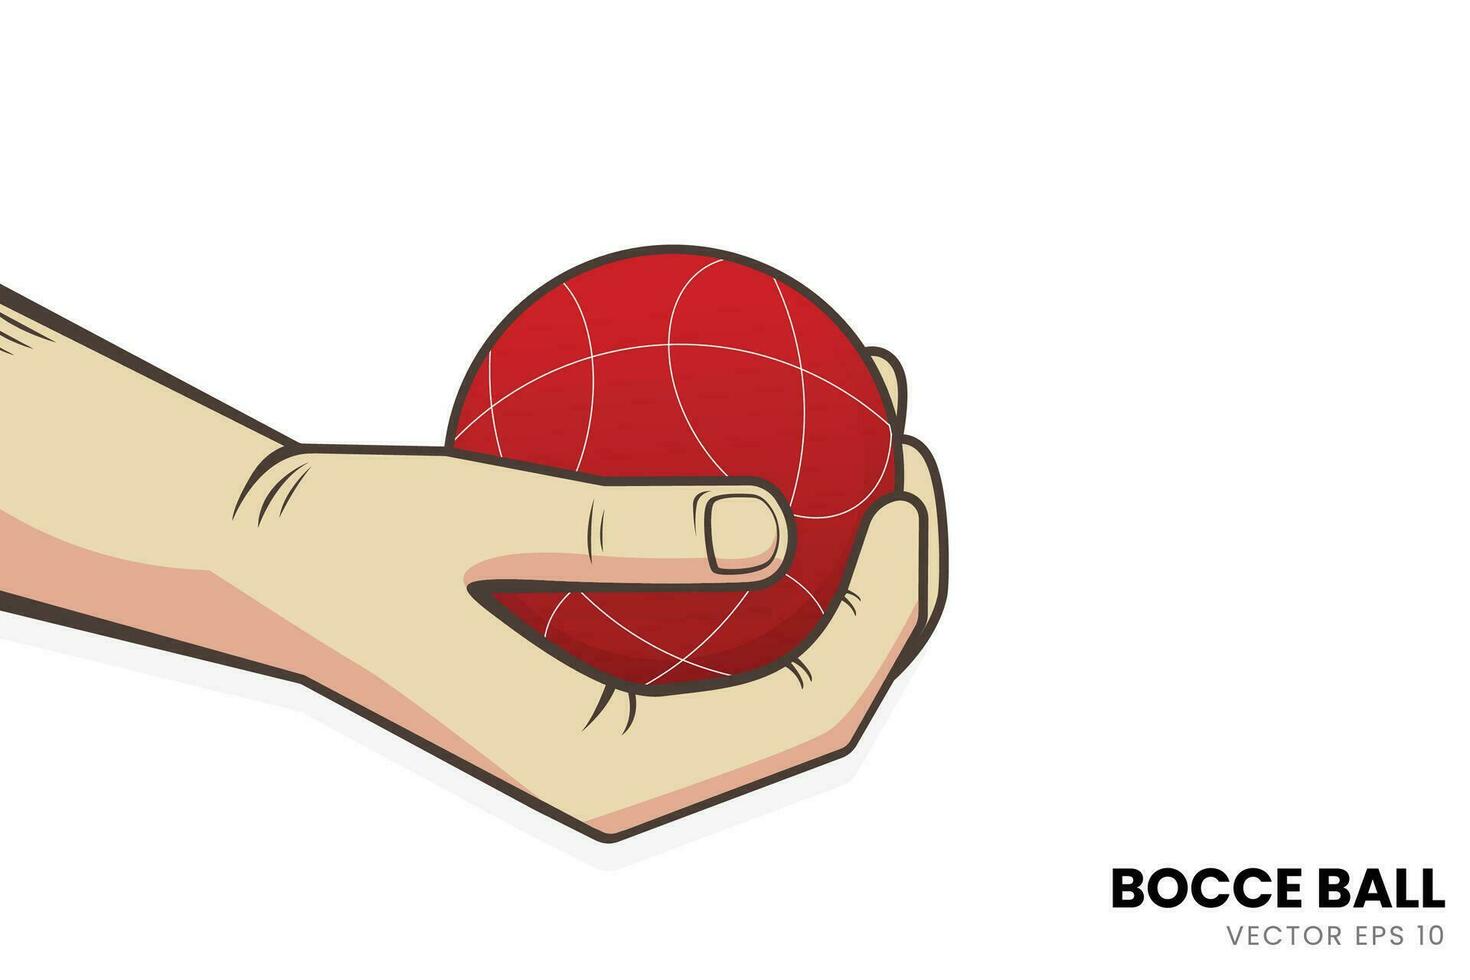 ilustración de el técnica de agarre el petanca pelota. Perfecto para adicional imágenes con un petanca Deportes tema. vector